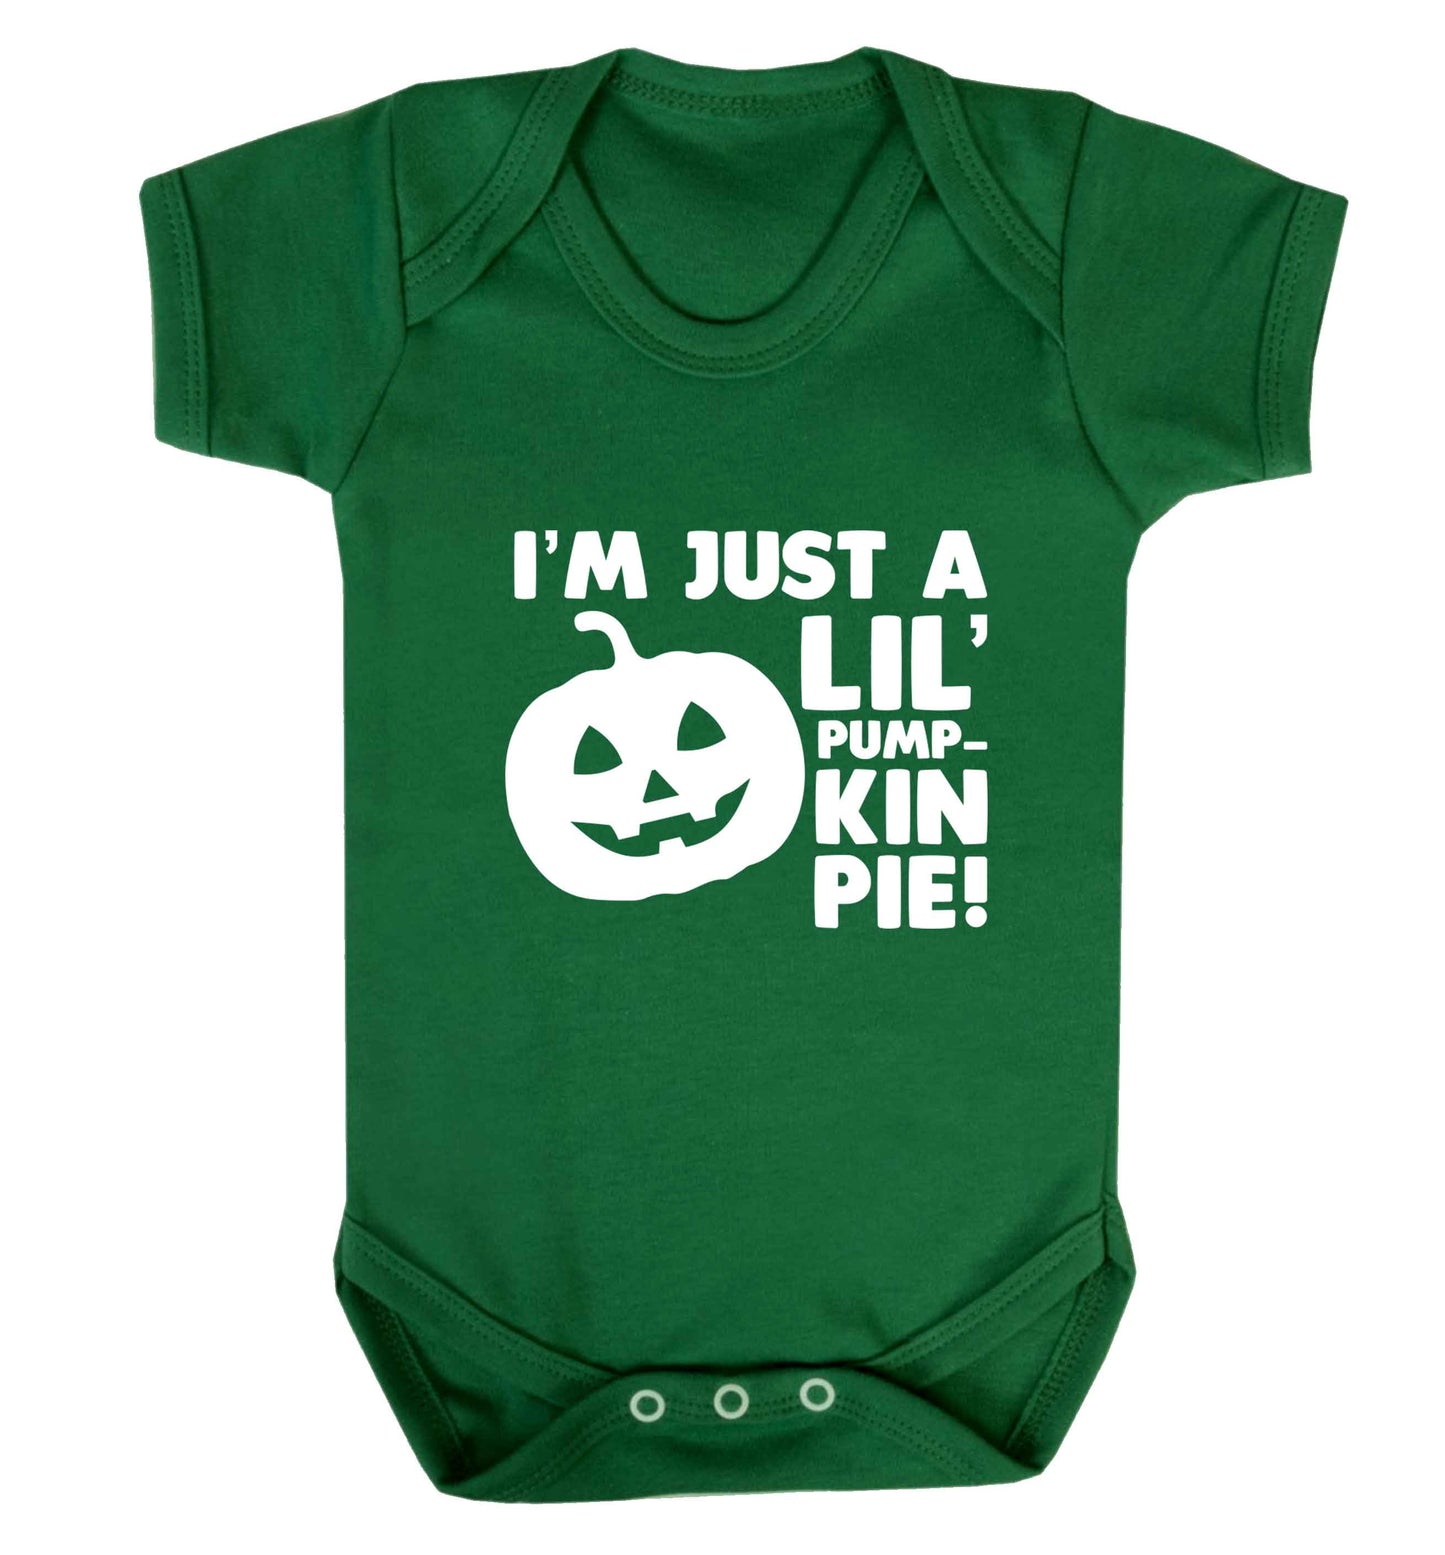 I'm just a lil' pumpkin pie baby vest green 18-24 months